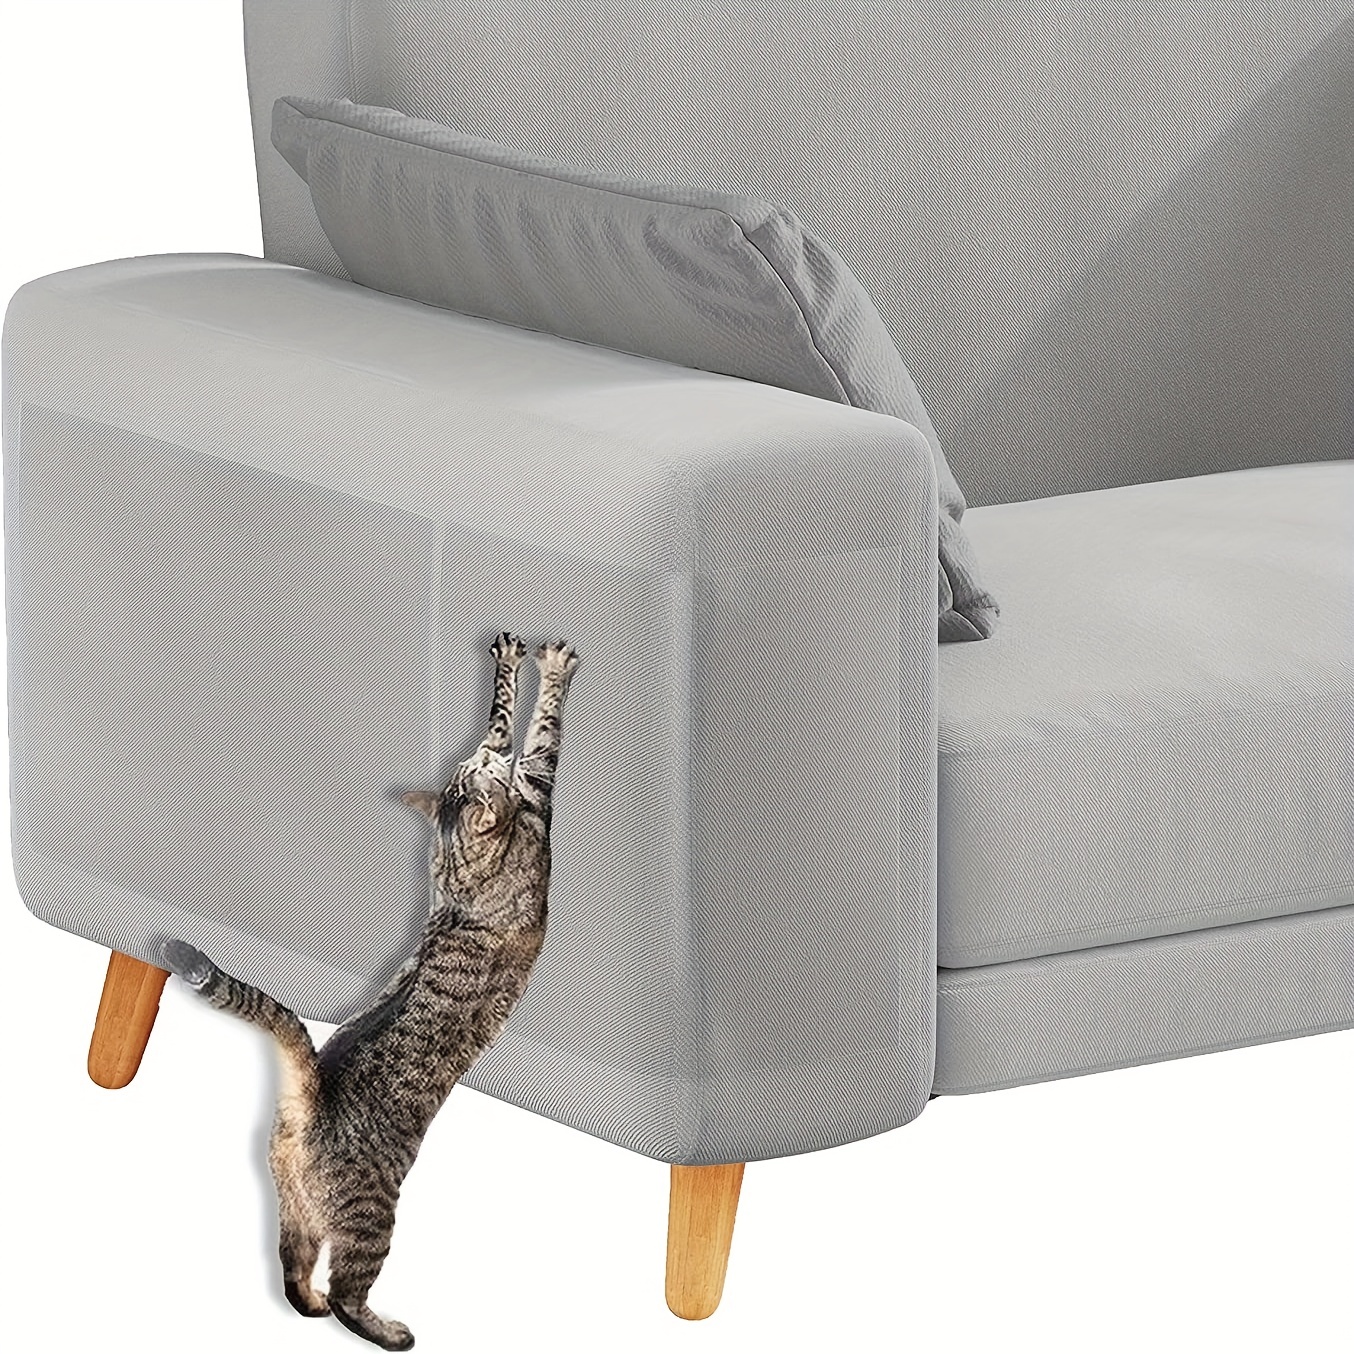 1 Stück Transparenter Möbelschutz Für Haustiere, Verhindert